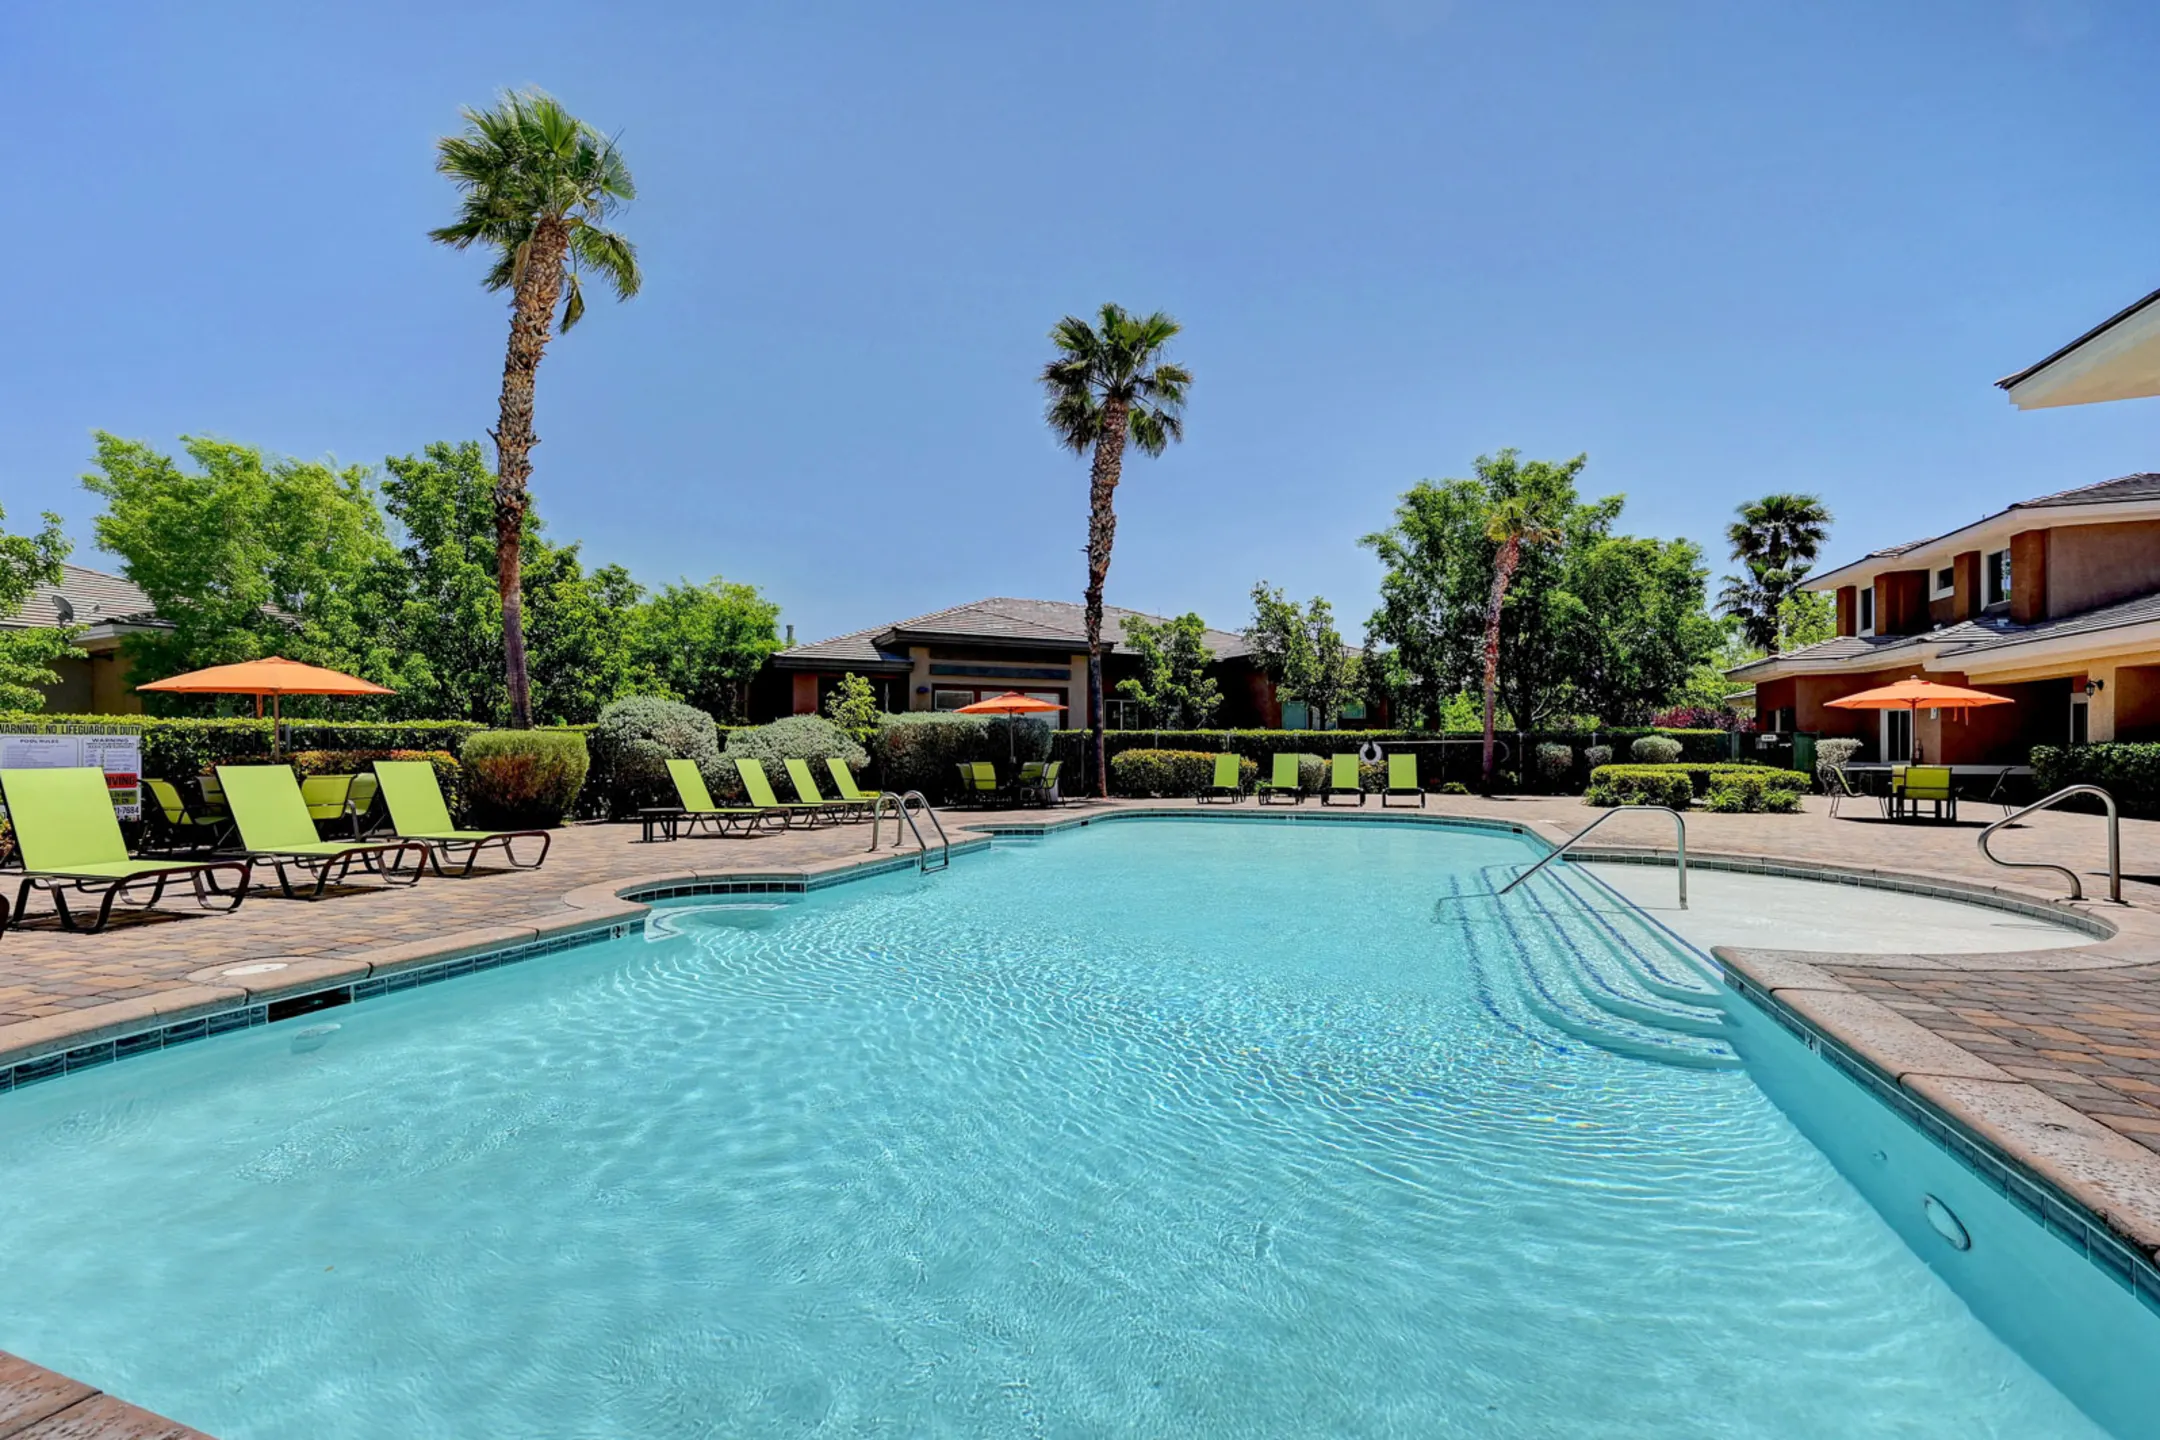 Pool - Canyon Villas - Las Vegas, NV